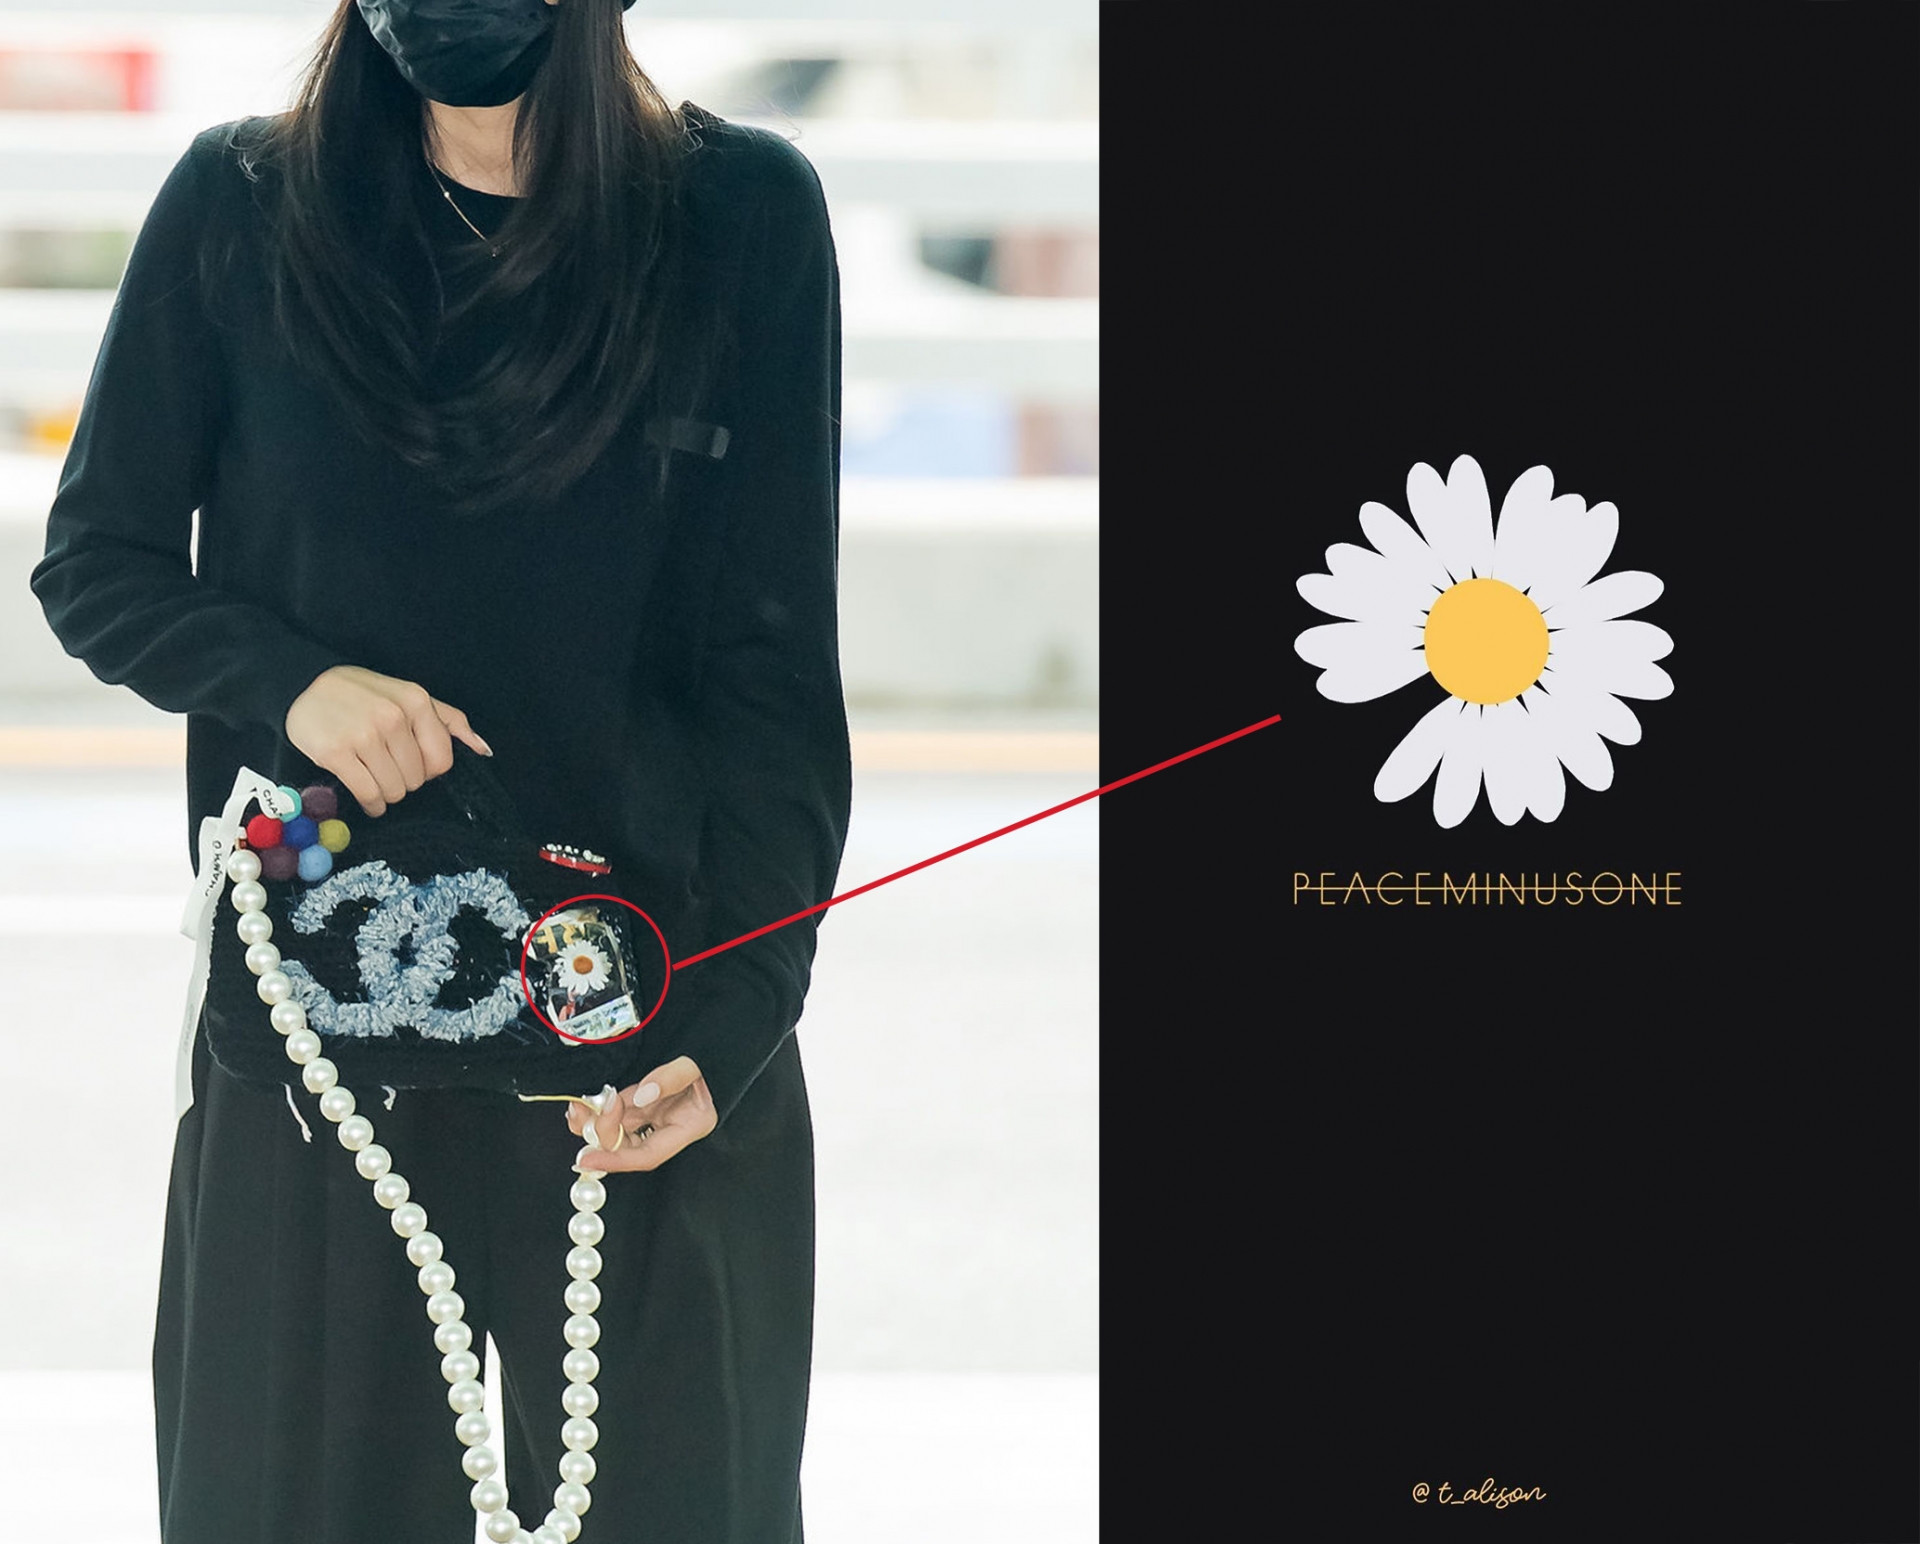 Sticker hoa cúc thiếu cánh vốn là hình ảnh biểu tưng cho thương hiệu thời trang của G-Dragon - 'tình tin đồn' của cô nàng.